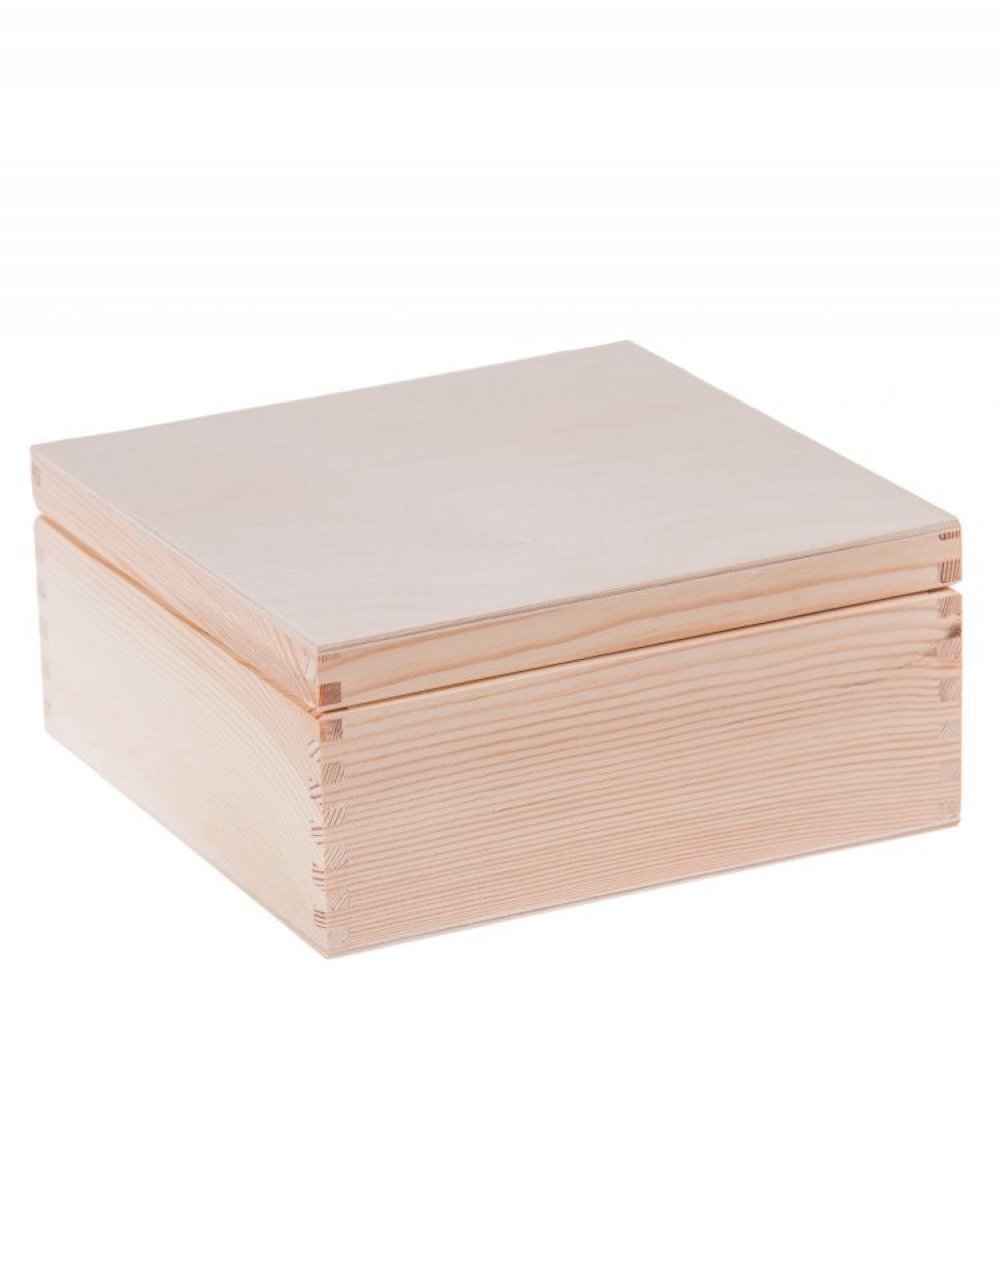 Sada víceúčelových dřevěných krabiček 4v1 - čtvercová